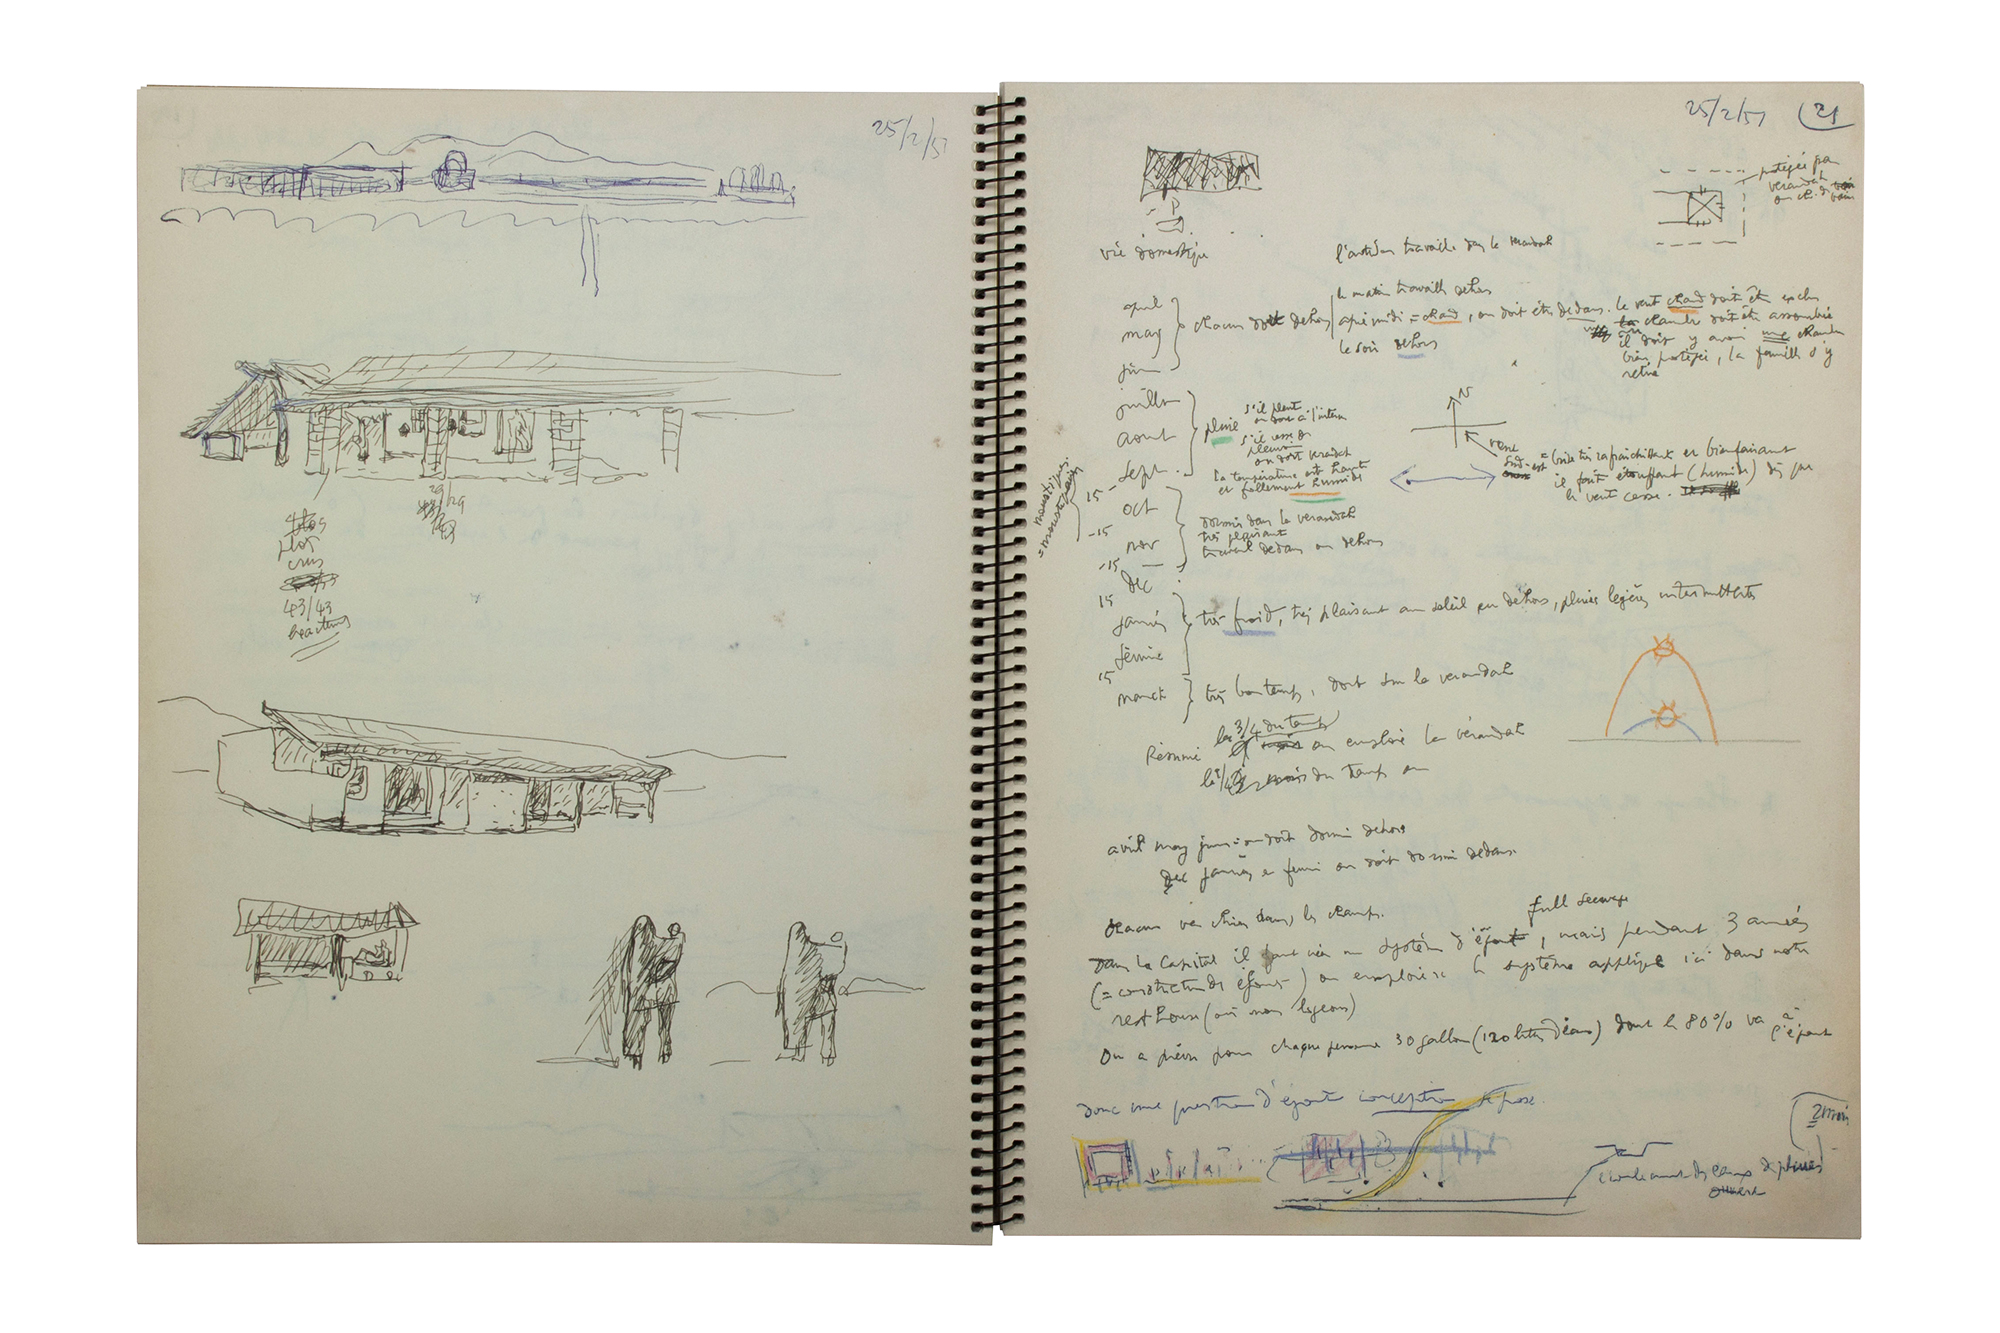 Spiralgebundenes Notizbuch von Le Corbusier in einer Faksimile-Ausgabe.